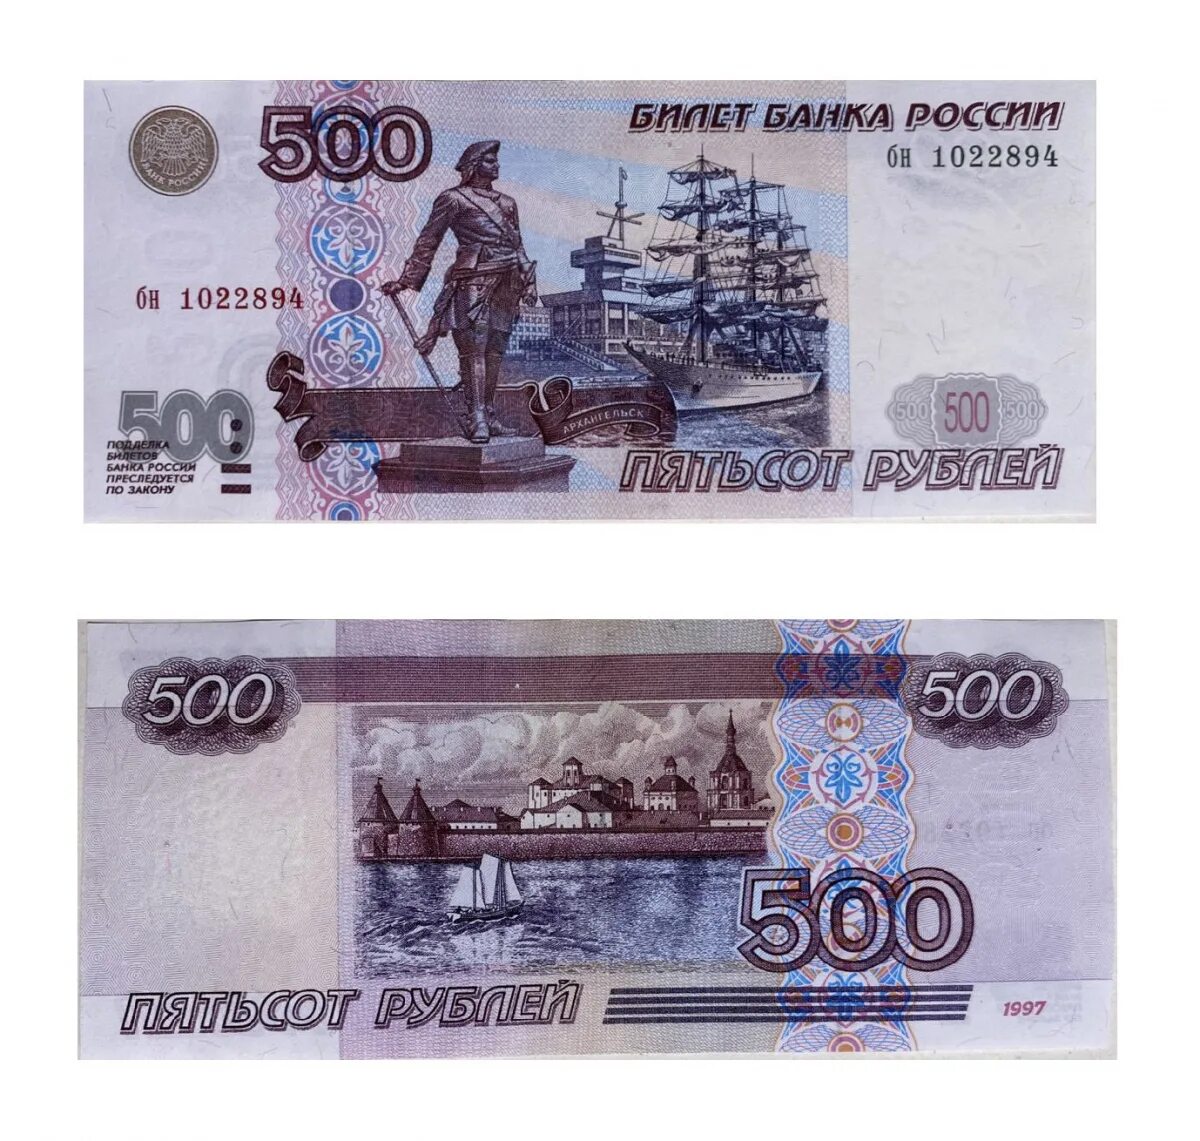 500 рублей лист. Купюра 500 рублей. 500 Рублей. Банкнота 500 рублей. 500 RUBLLIK kupyura.